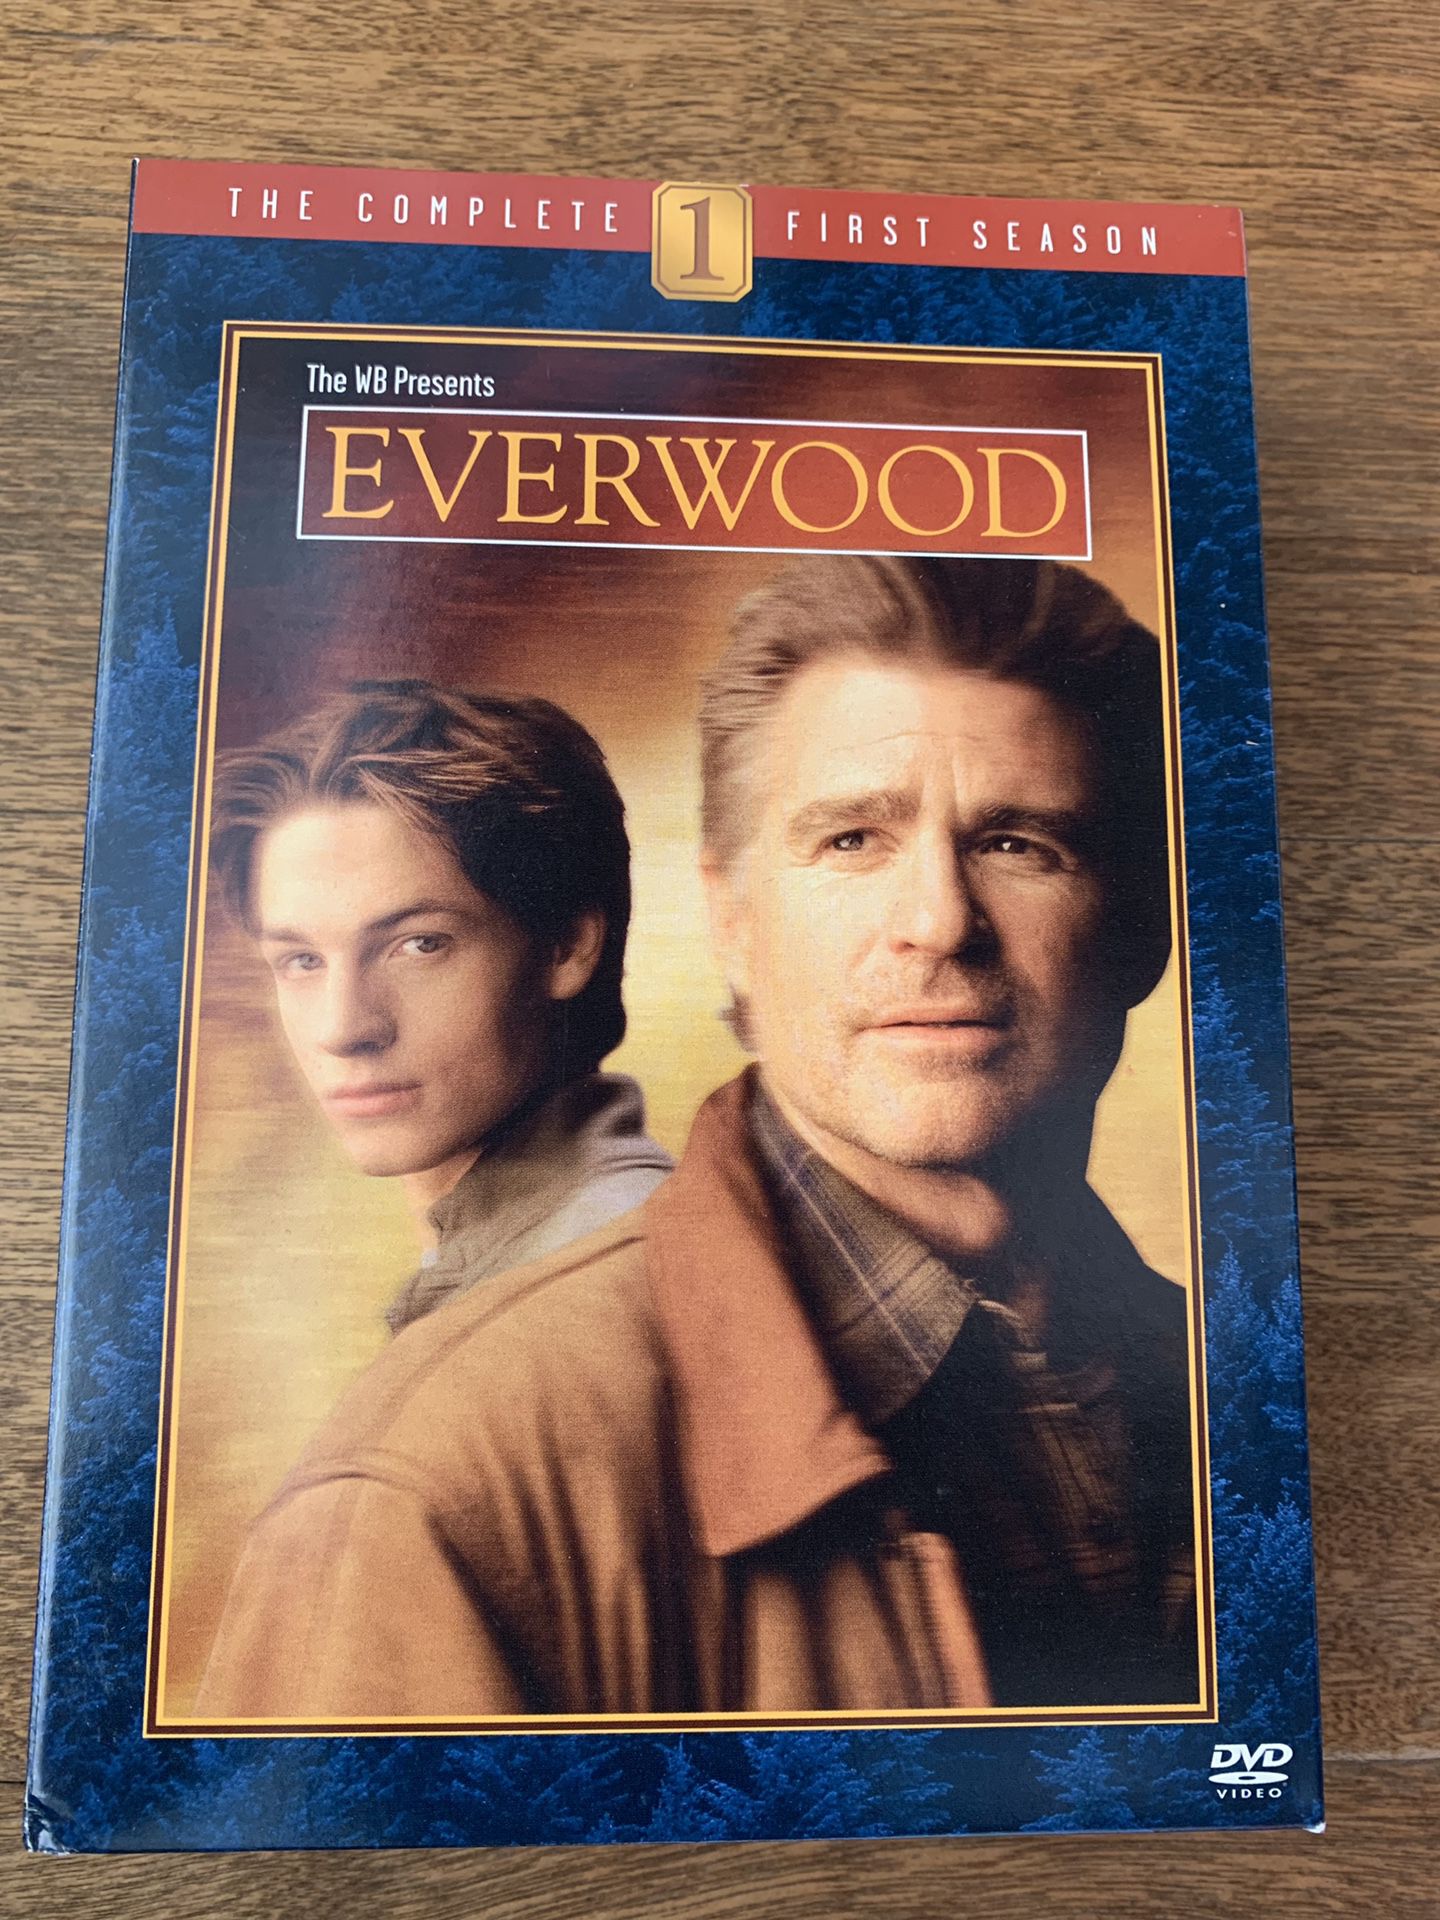 Everwood season 1